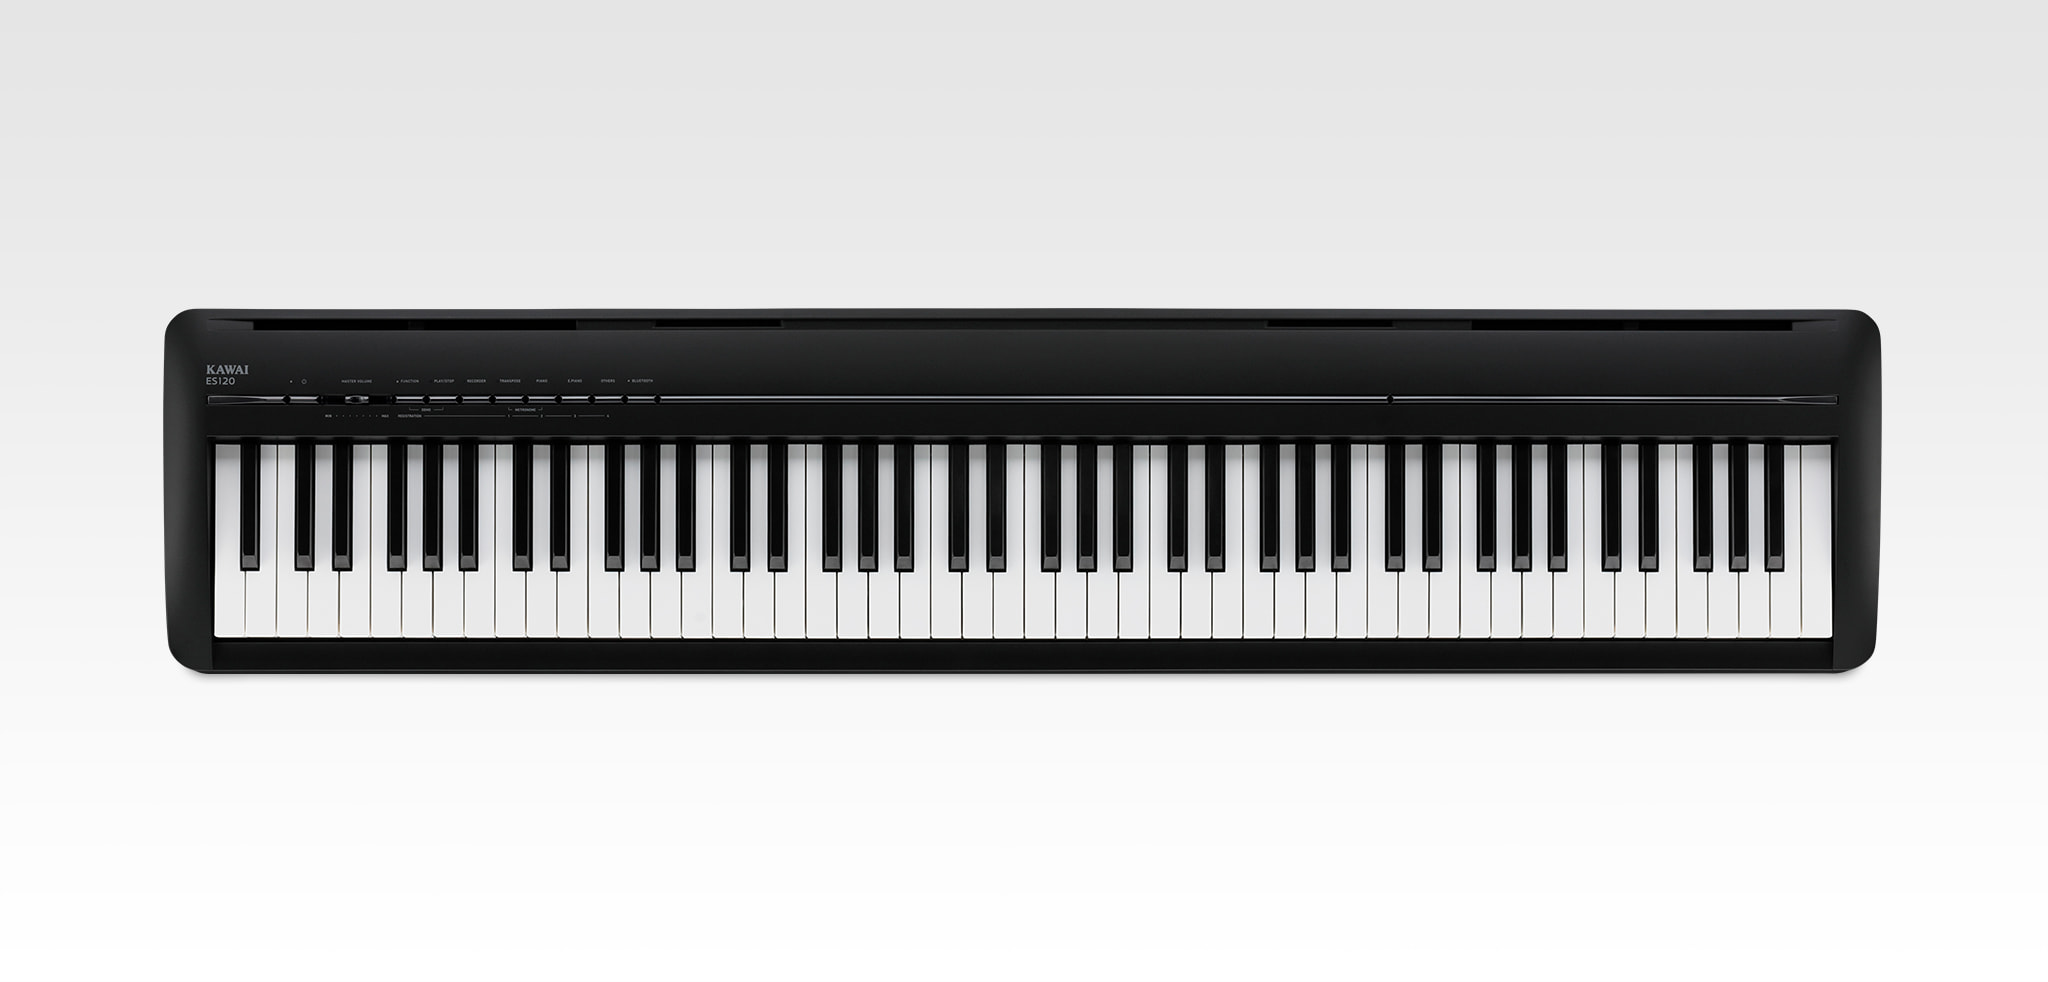 Kawai ES120｜Digital Pianos｜Products｜Kawai Musical Instruments